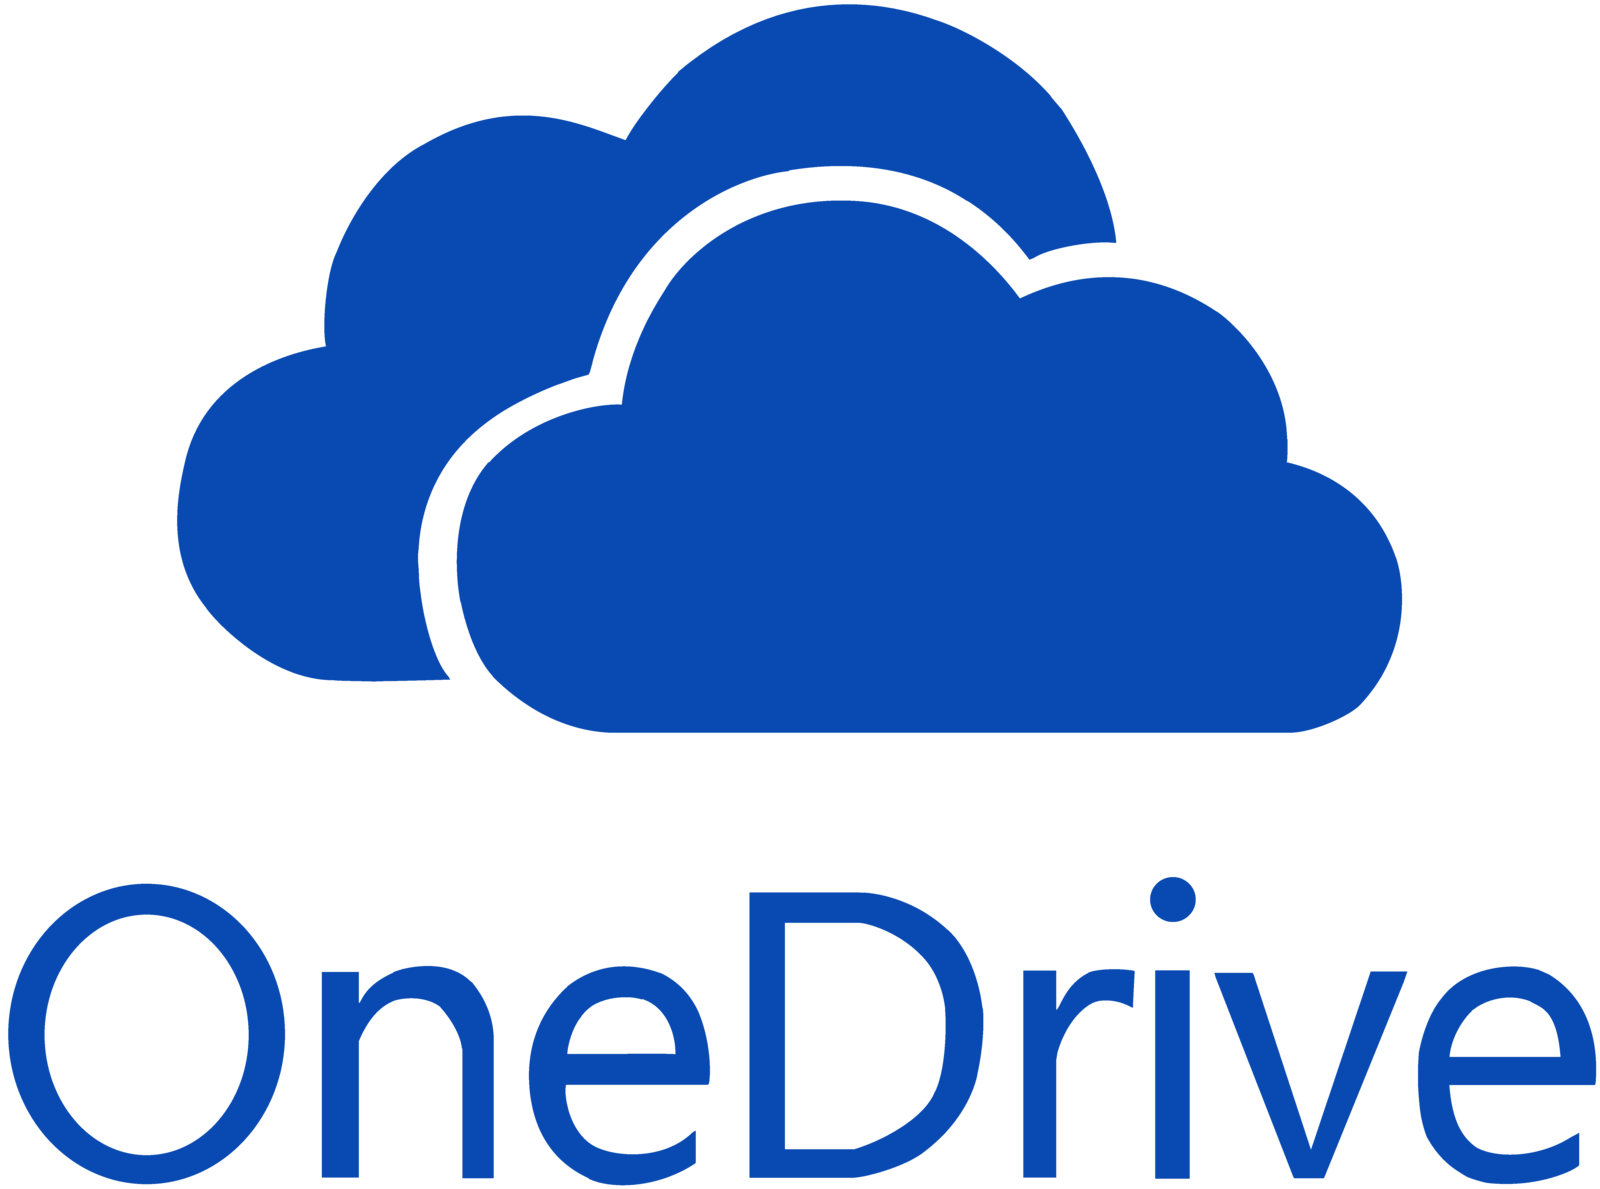 Add or Remove OneDrive Deskto